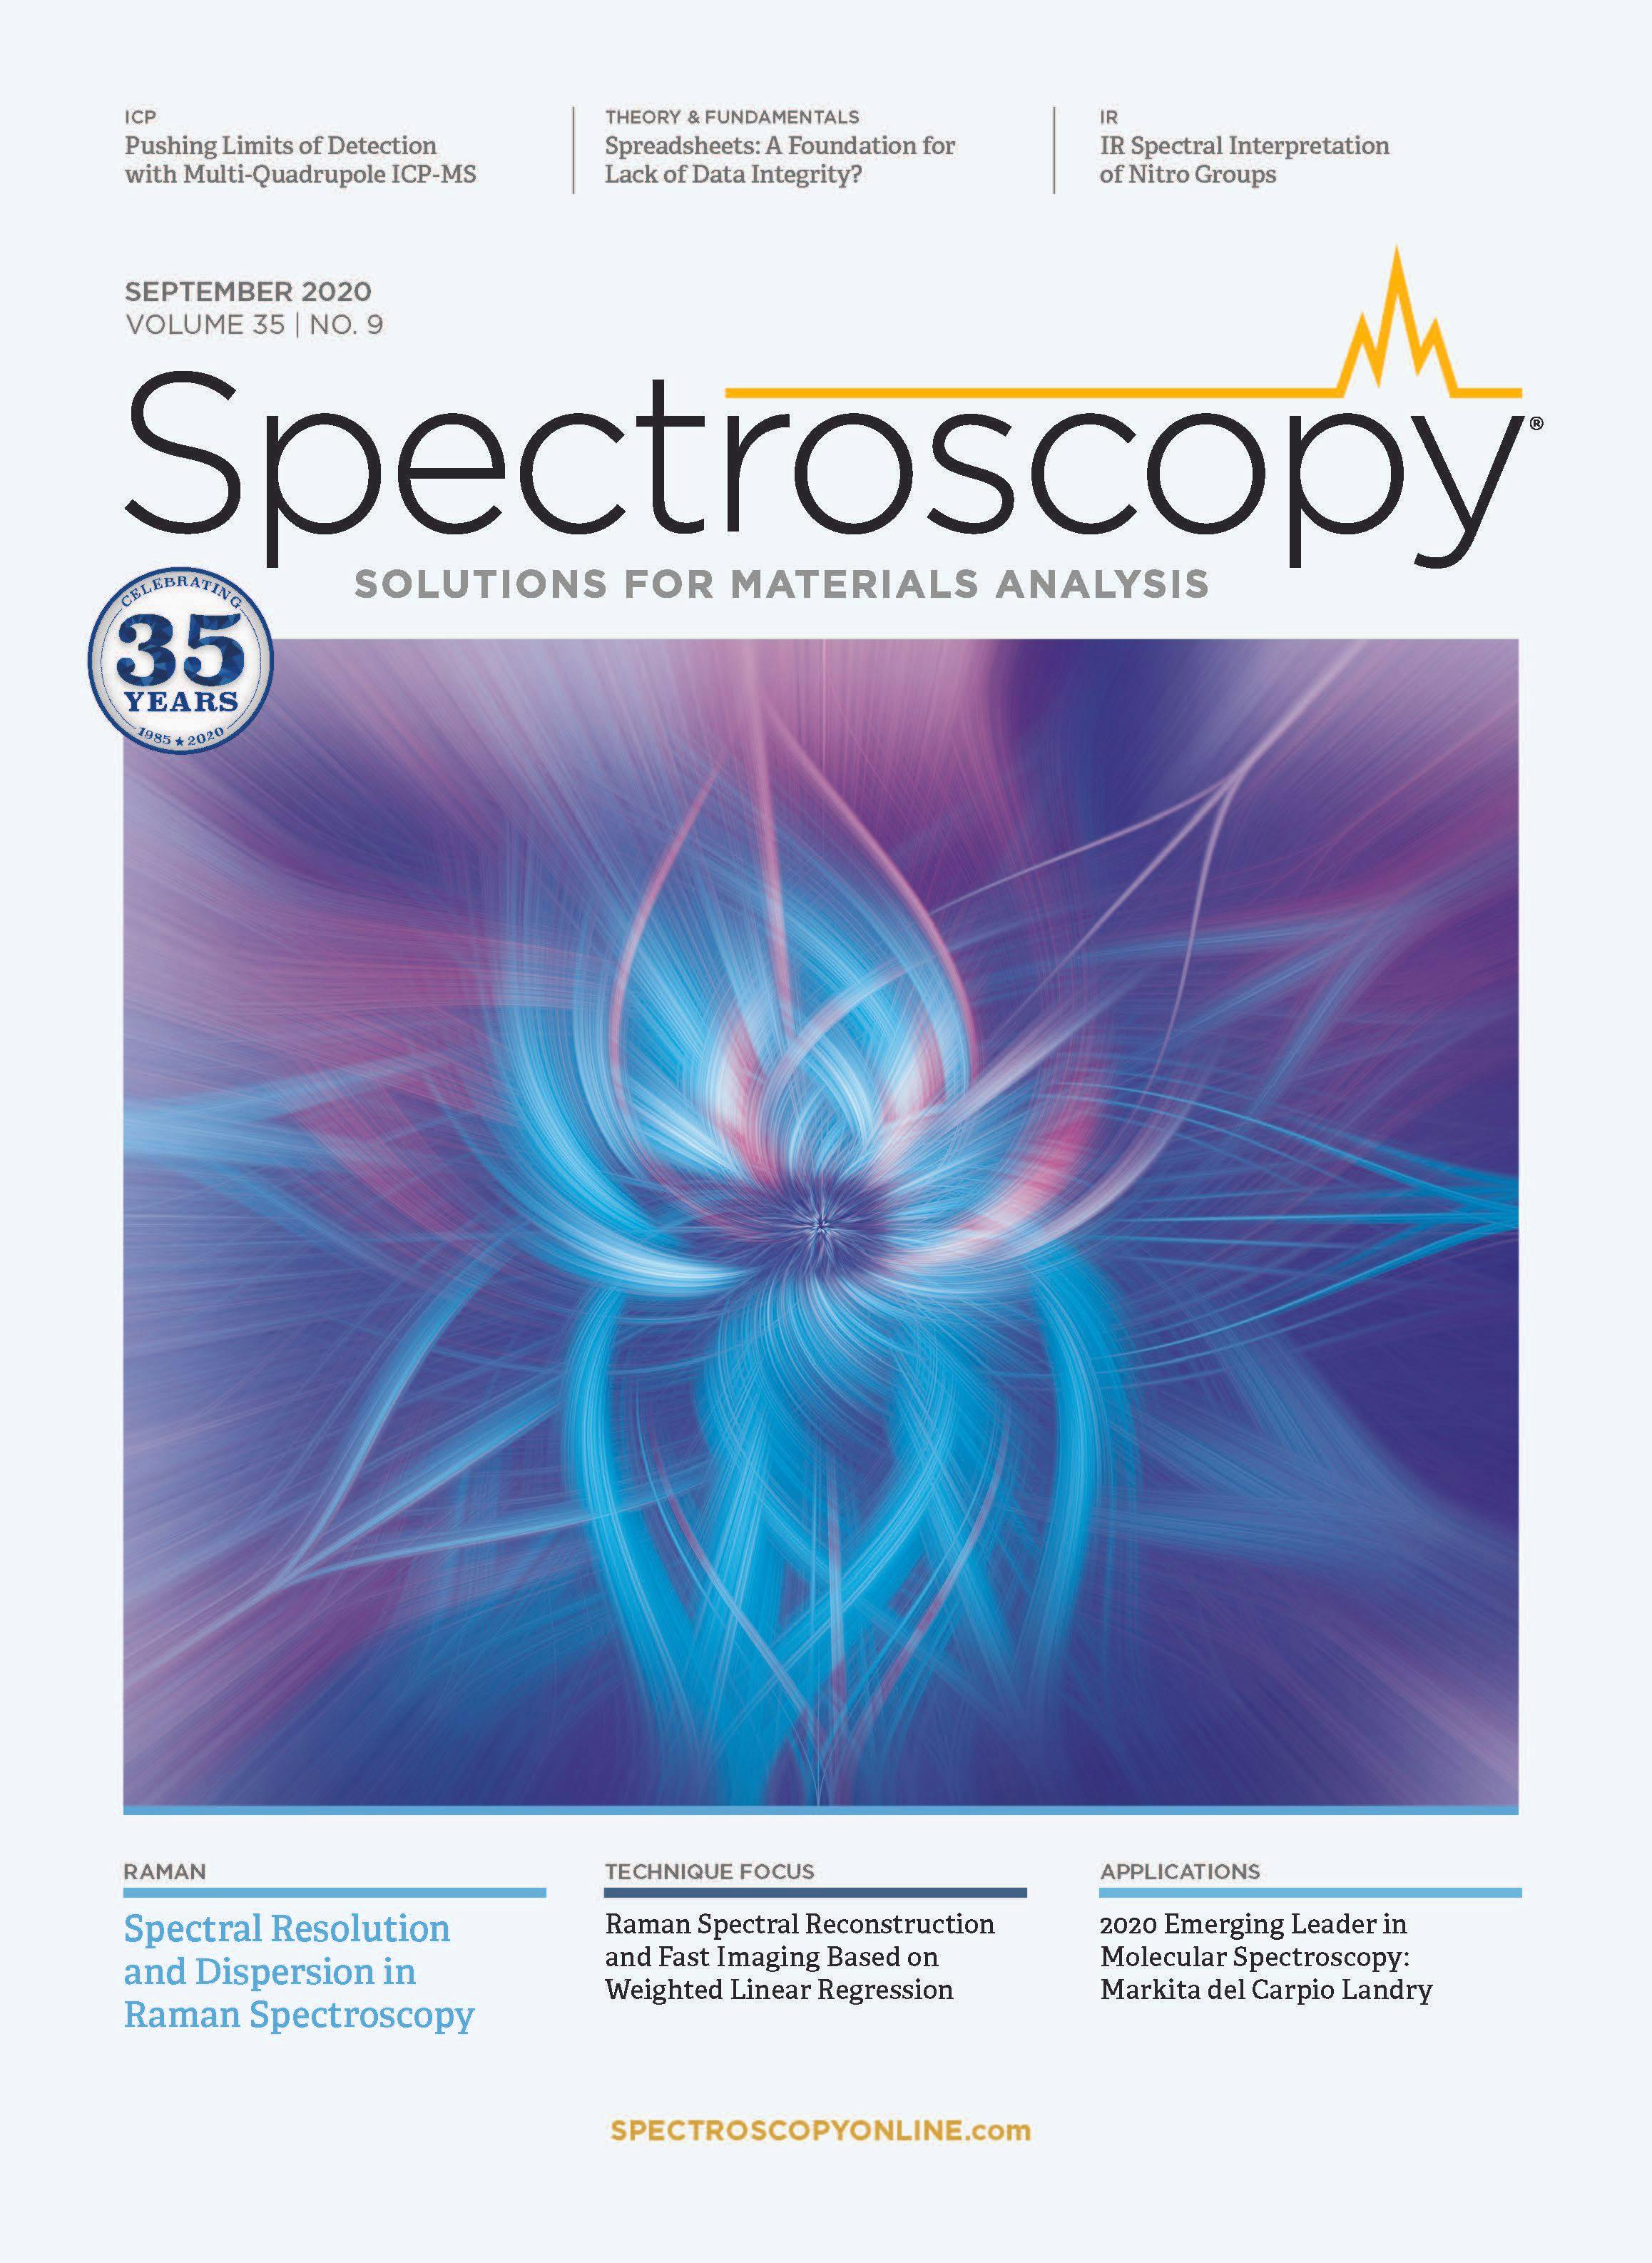 Spectroscopy-09-01-20